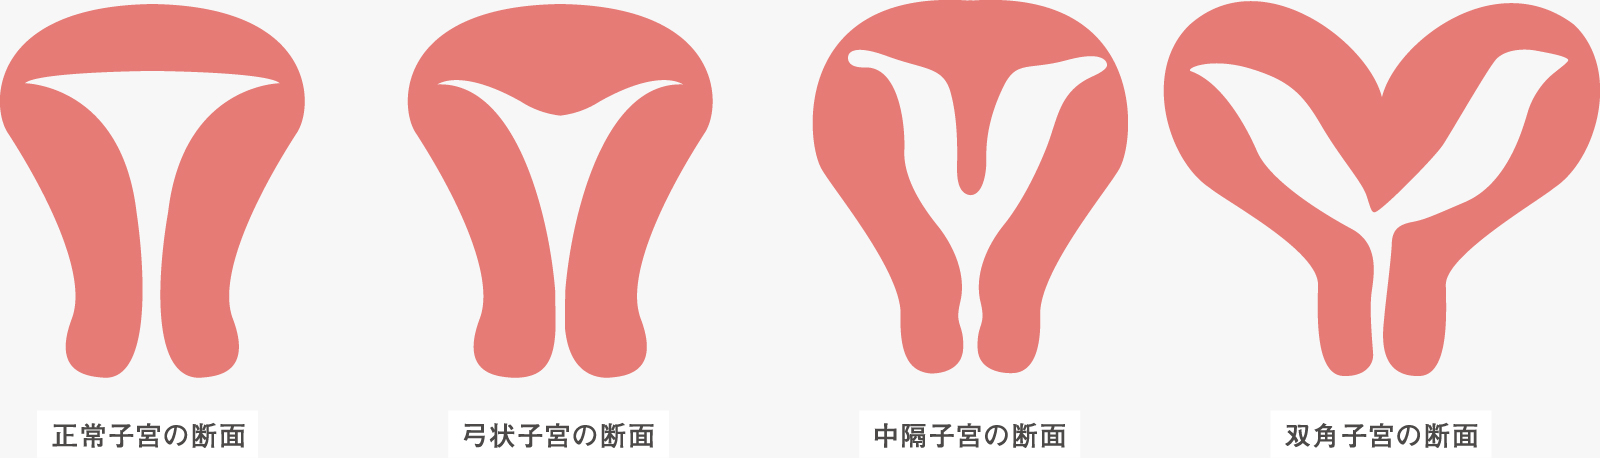 正常子宮の断面, 弓状子宮の断面, 中隔子宮の断面, 双角子宮の断面